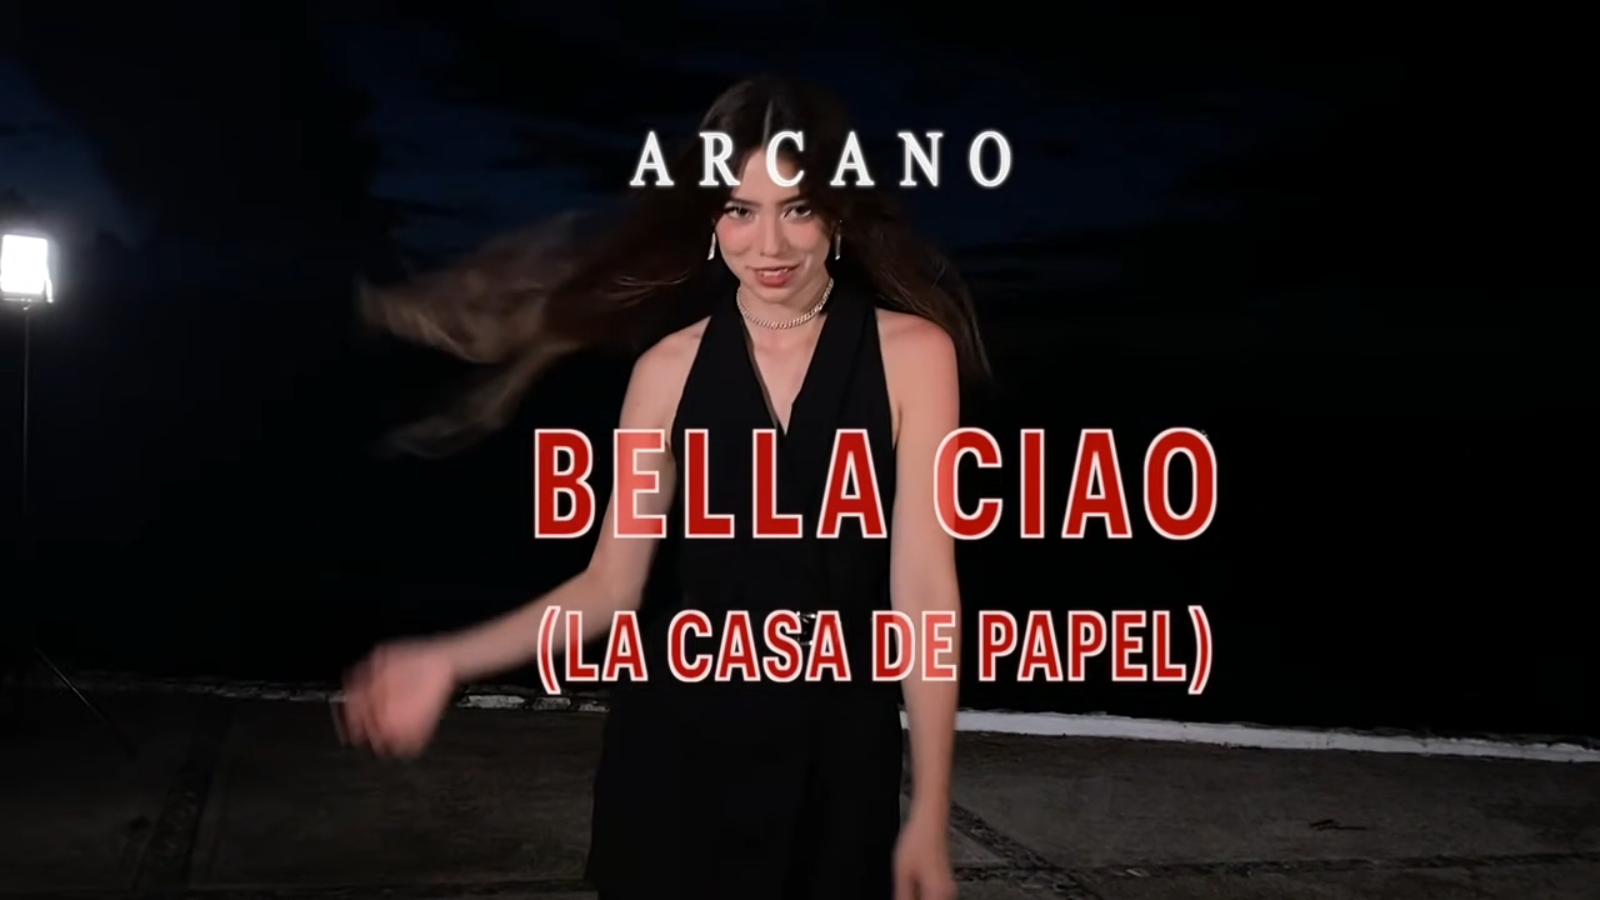 Arcano - Bella ciao